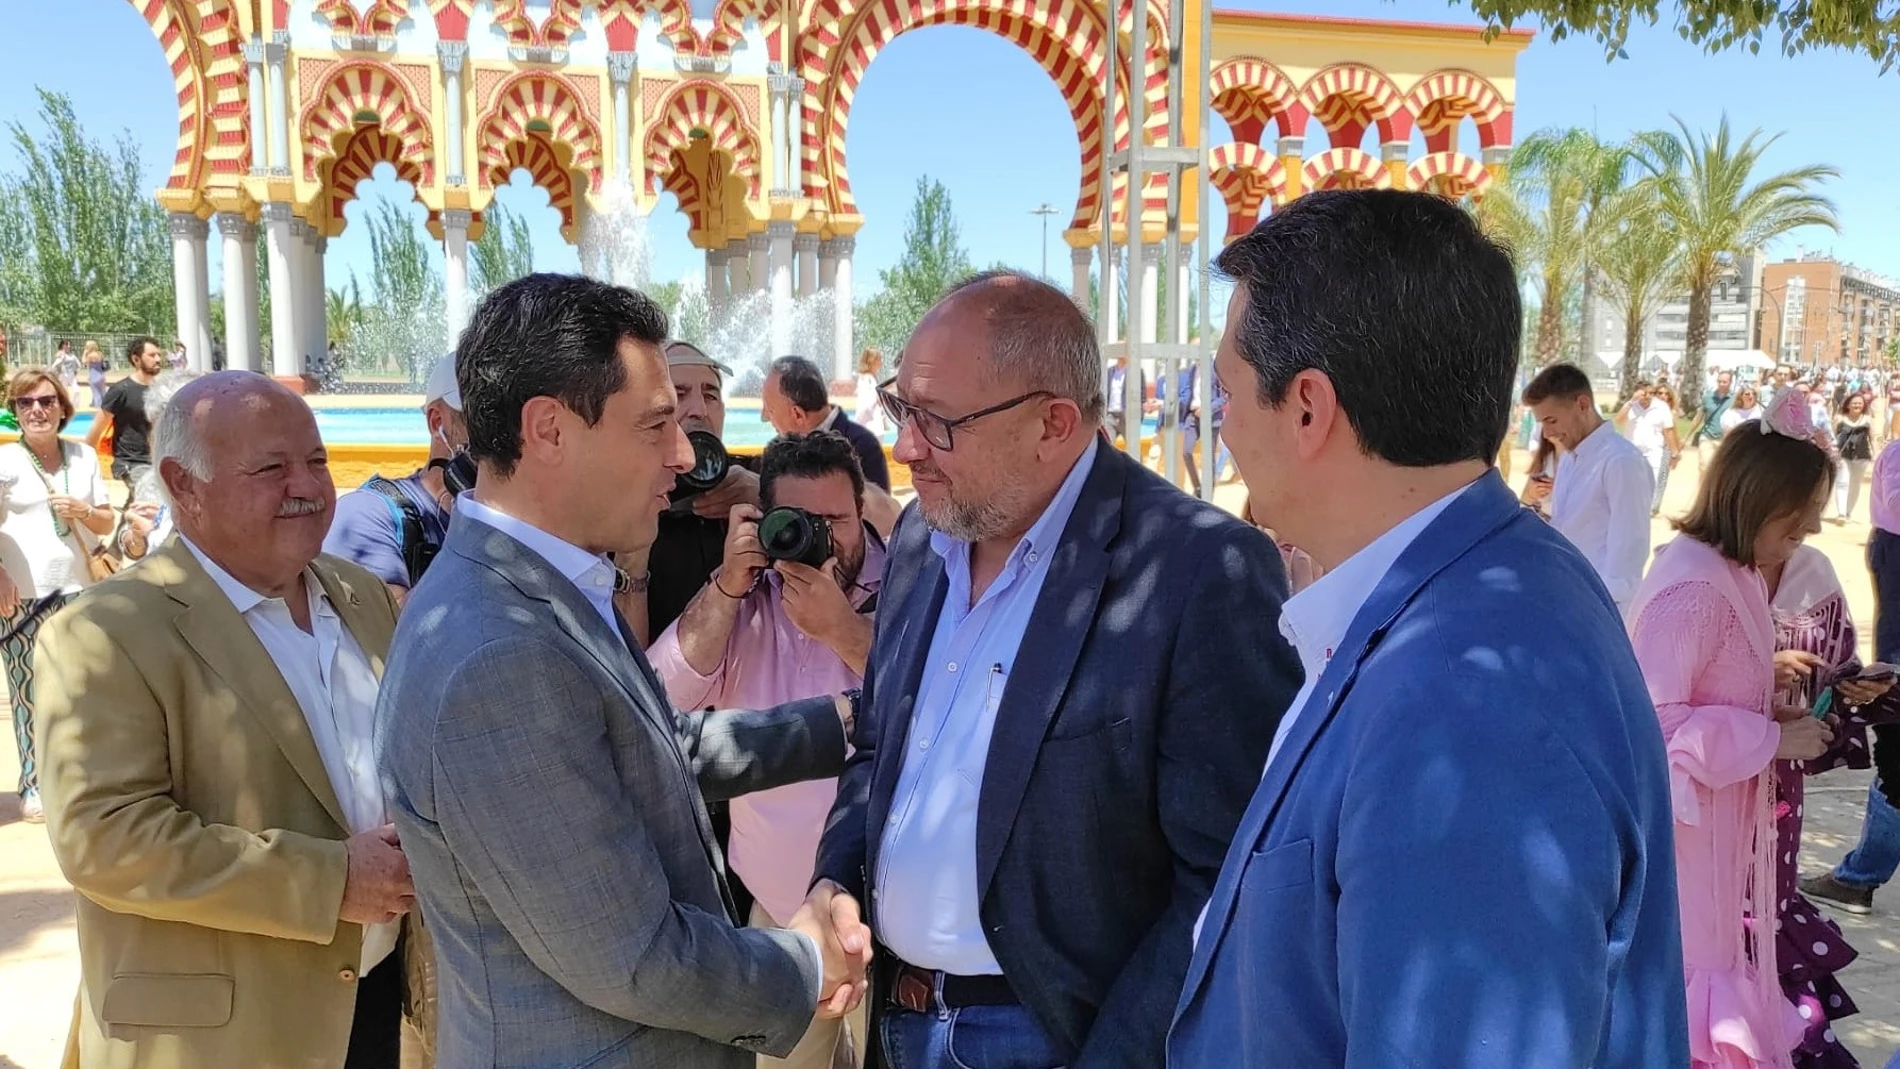 El nuevo rector de la UCO, Manuel Torralbo, saluda al presidente de la Junta de Andalucía, Juanma Moreno, durante un encuenrro en la pasada Feria de Nuestra Señora de la Salud de Córdoba. EUROPA PRESS